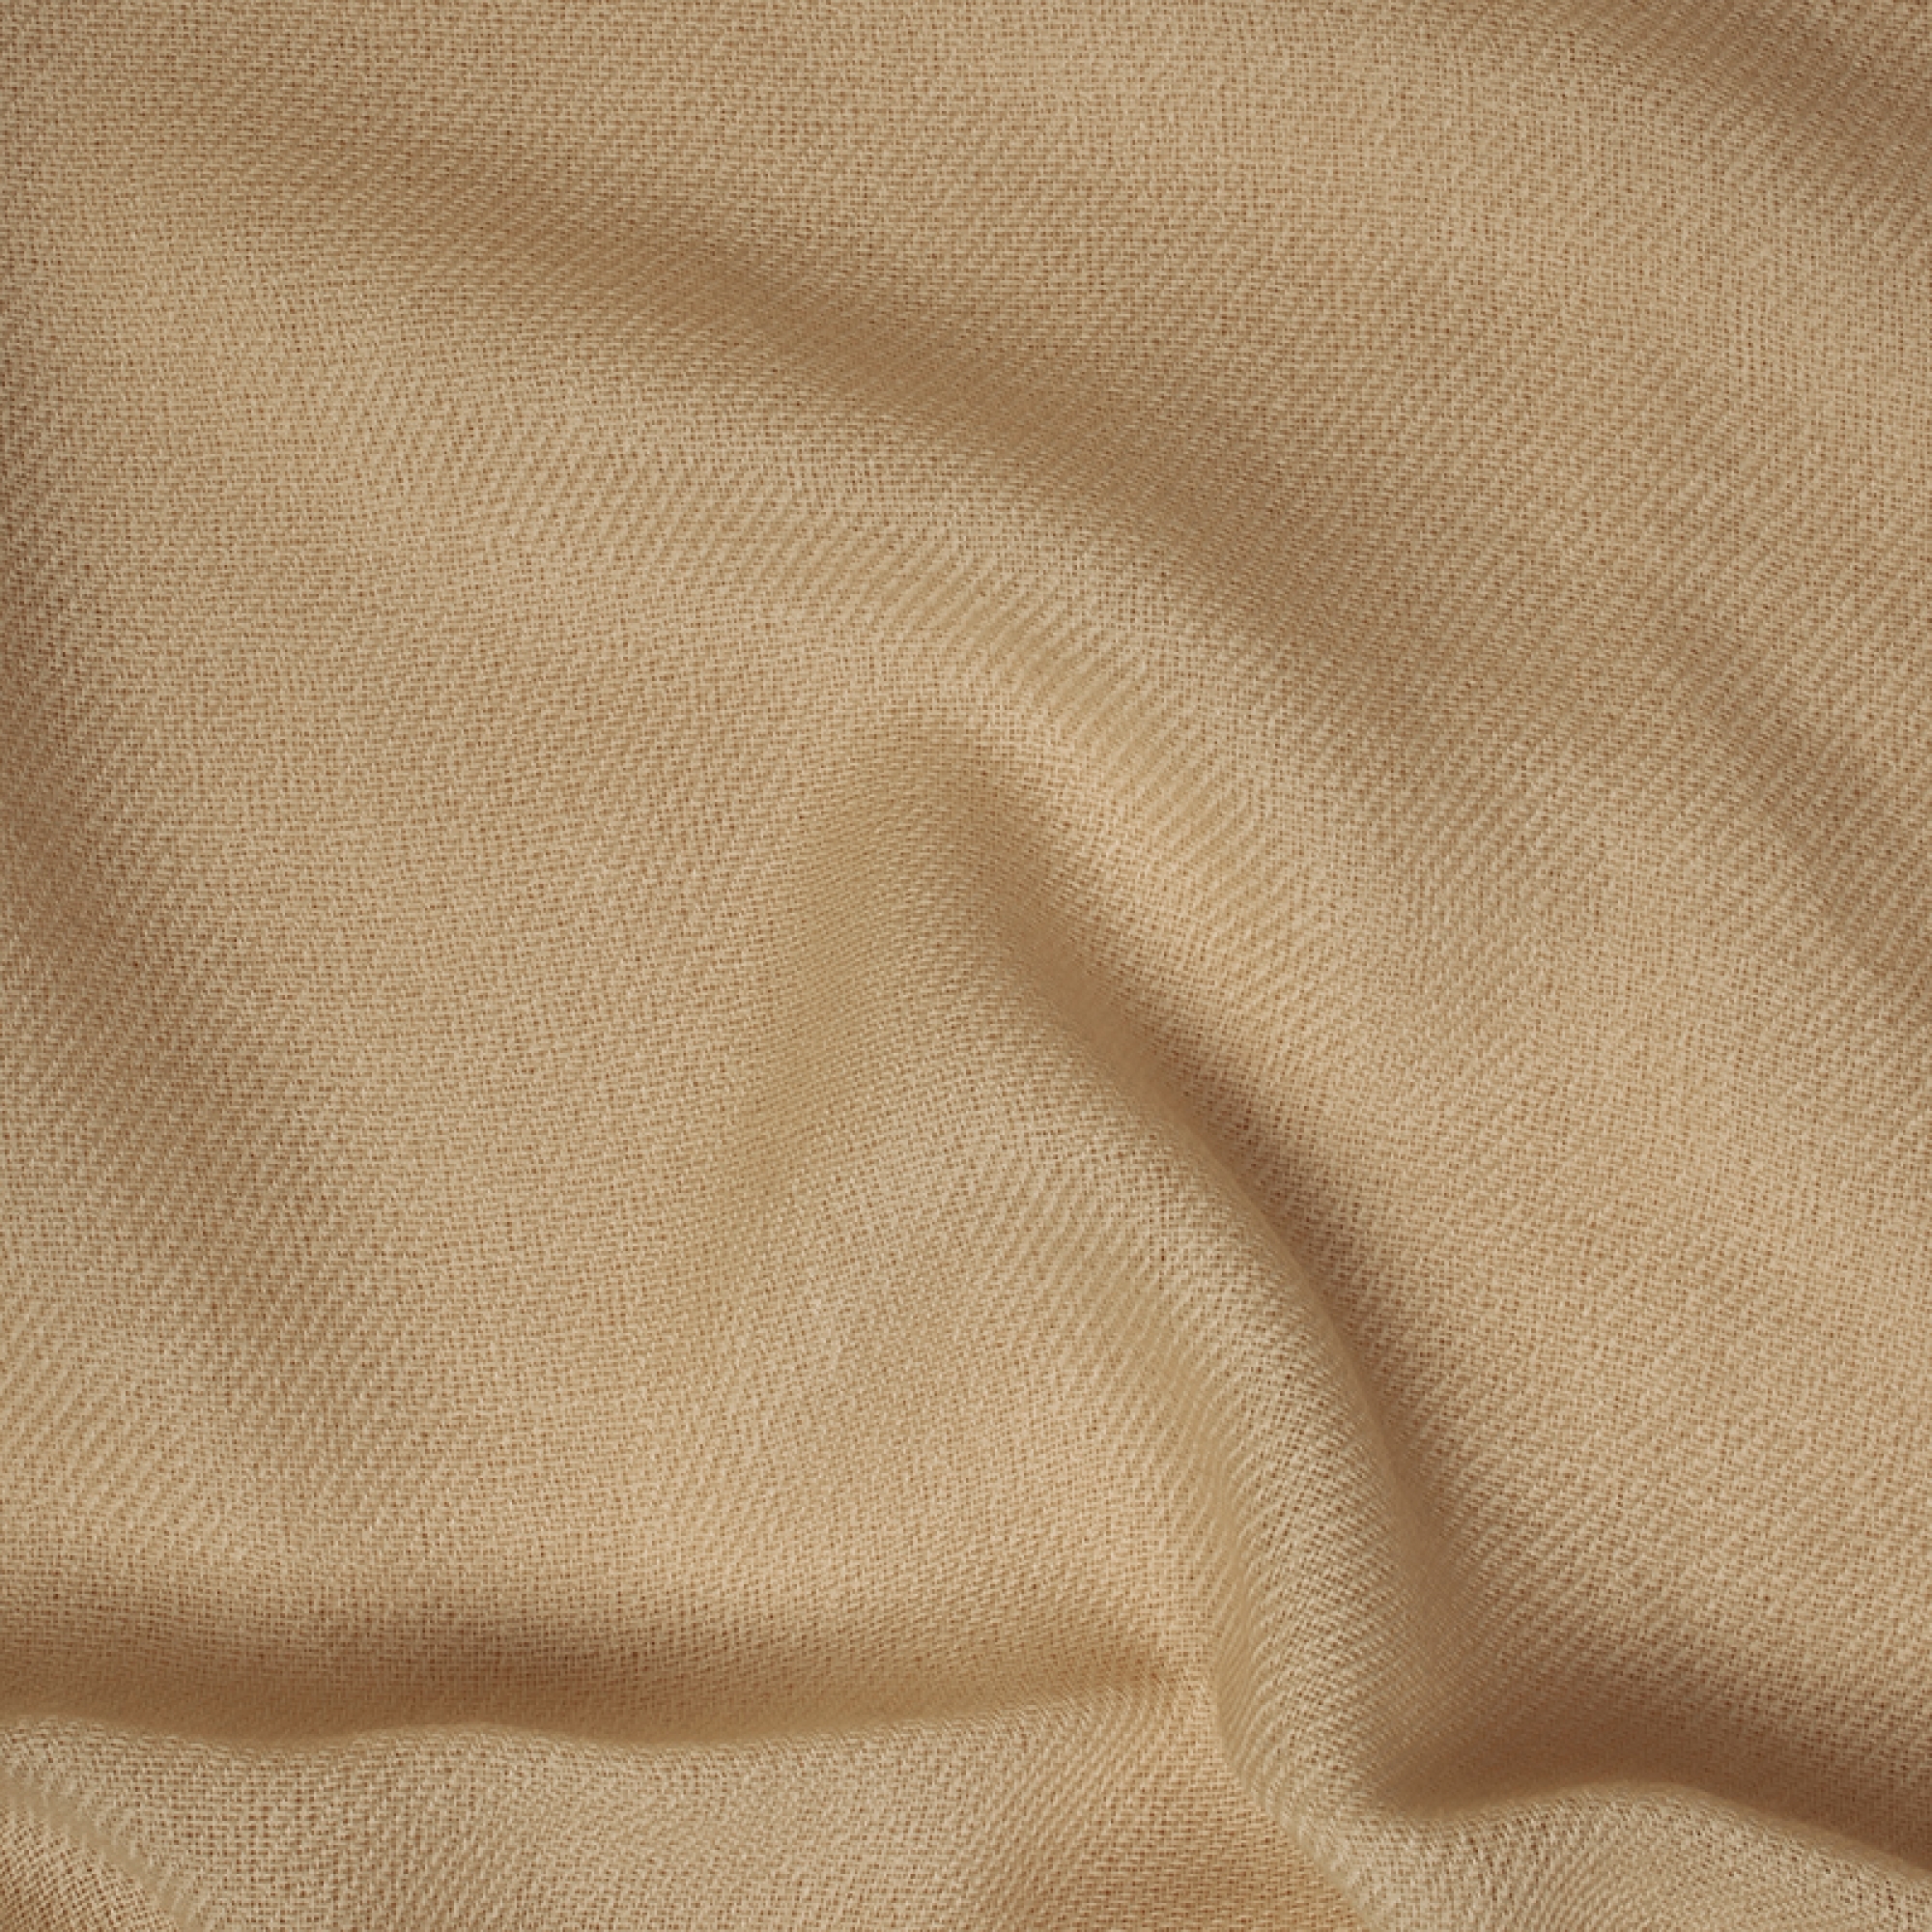 Cachemire accessoires couvertures plaids toodoo plain l 220 x 220 champagne dore 220x220cm